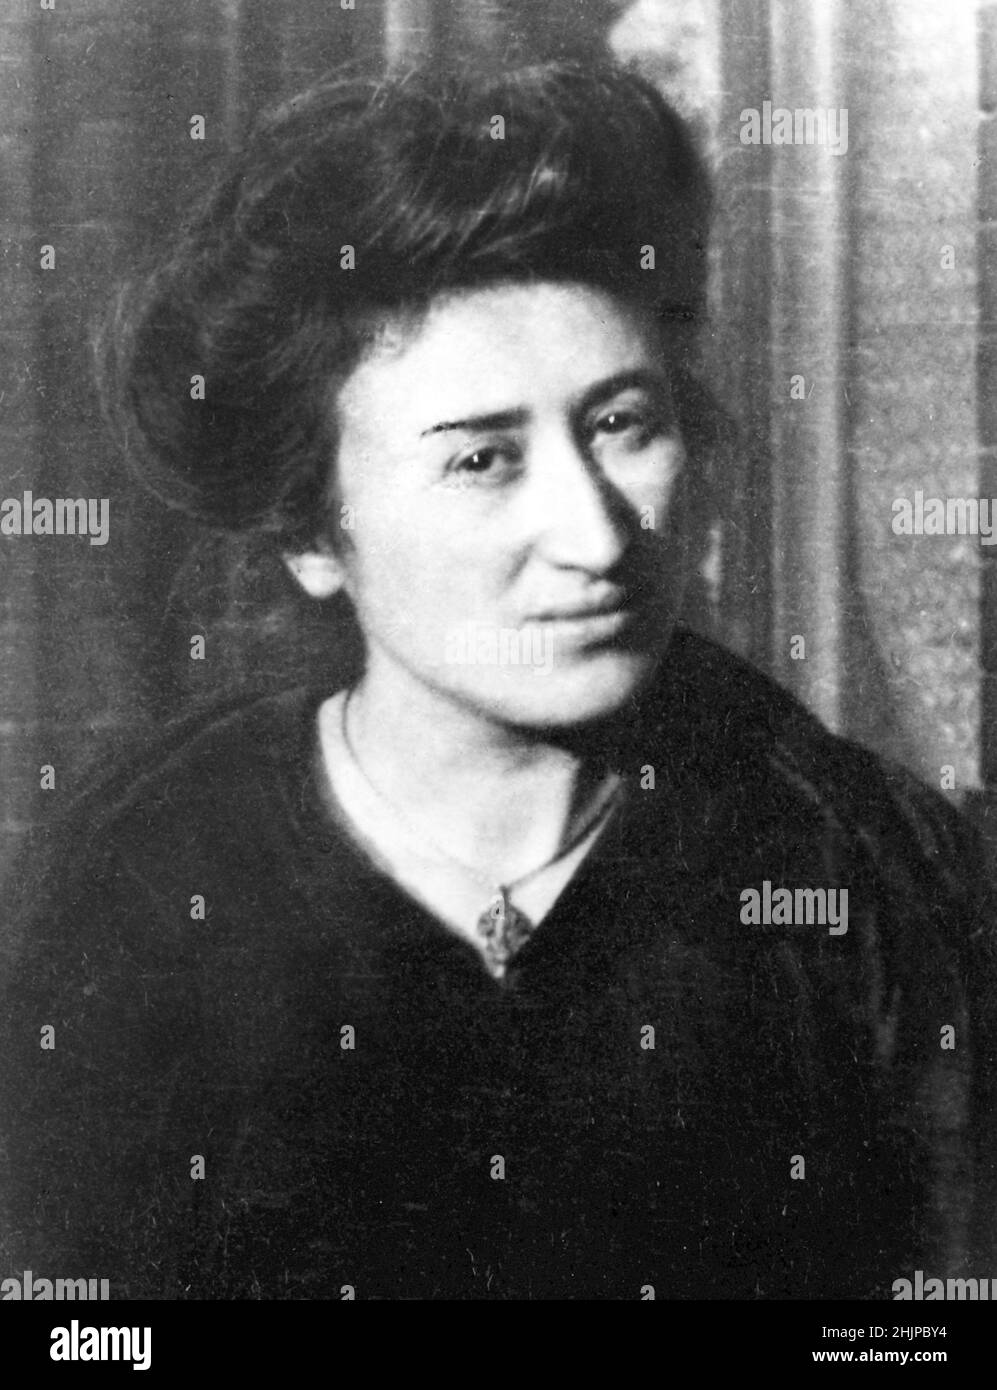 Porträt von Rosa Luxemburg (Rosa Luxemburg) (1870-1919) Sozialistin und Mitglied der Kommunistischen Partei Deutschlands - Photographie 1907-1908 Sammlung privee Stockfoto